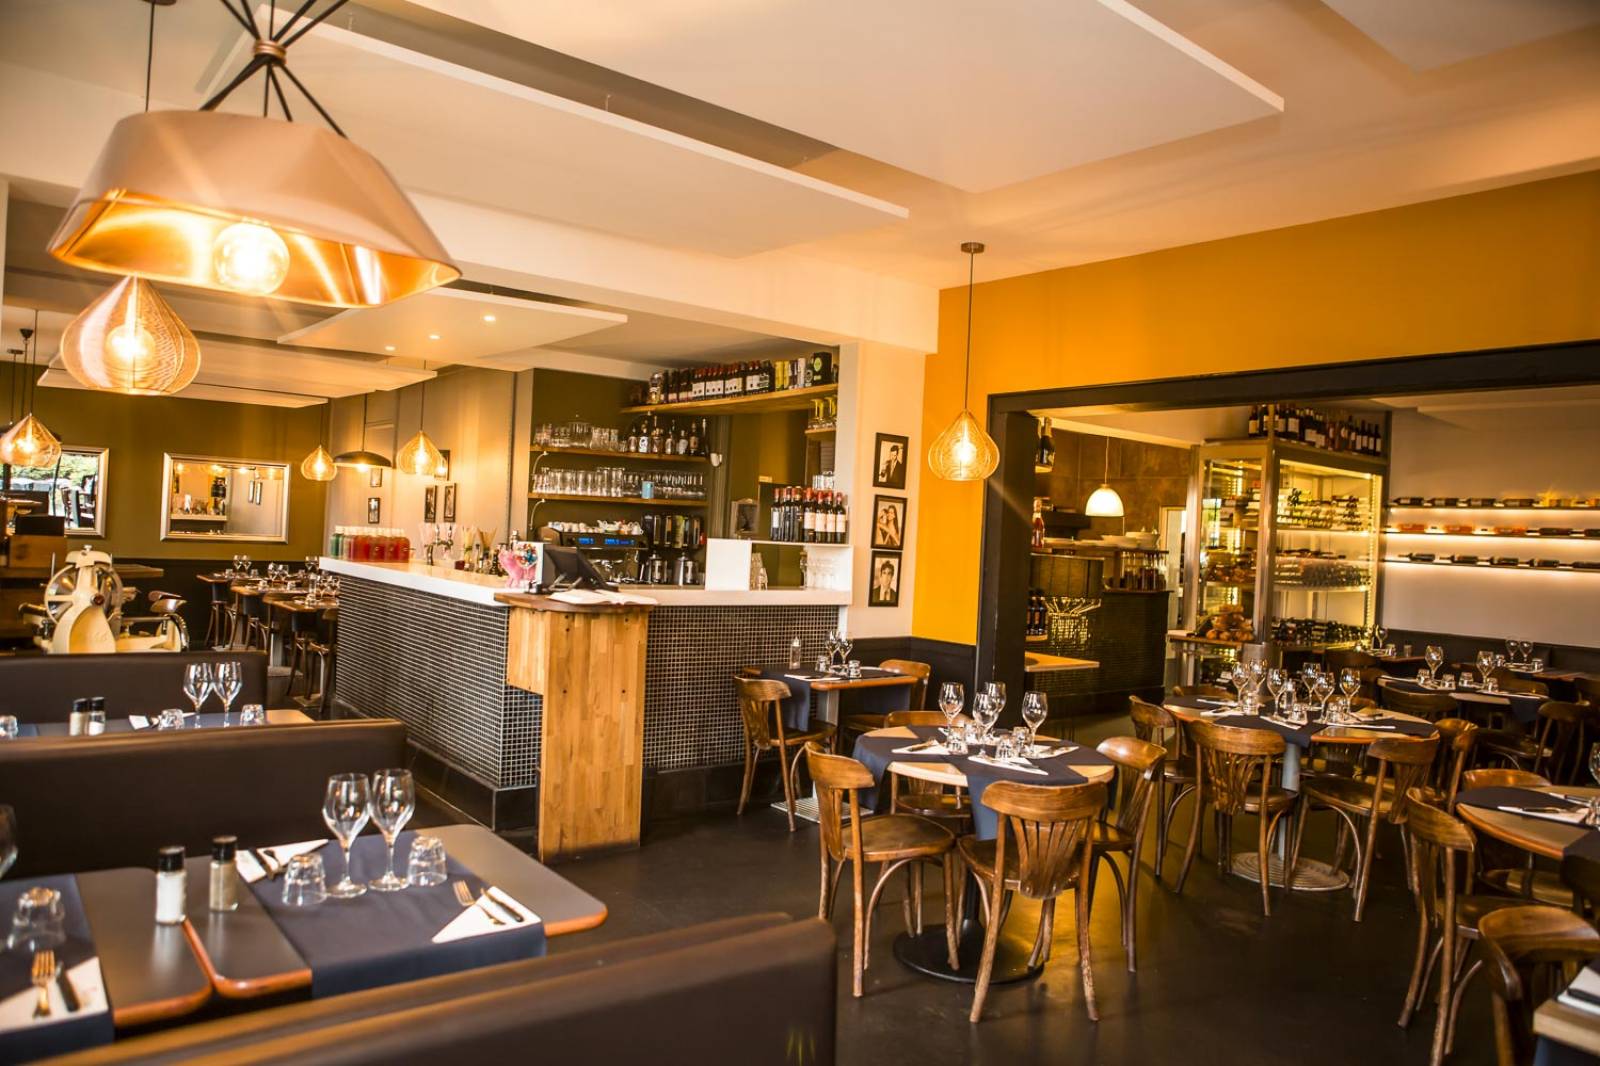 Restaurant spécialité italienne sur Mérignac - Artisanat de France